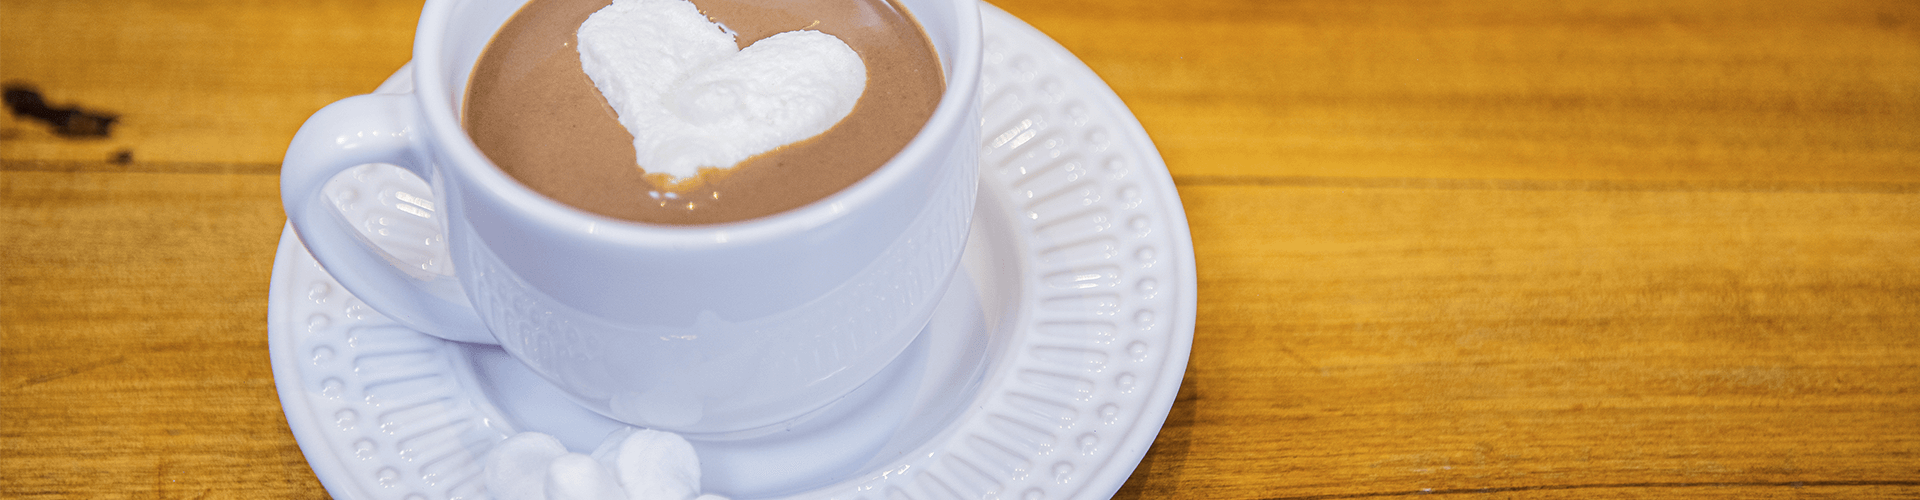 marshamallow caseiro mergulhado em uma xícara de chocolate quente.